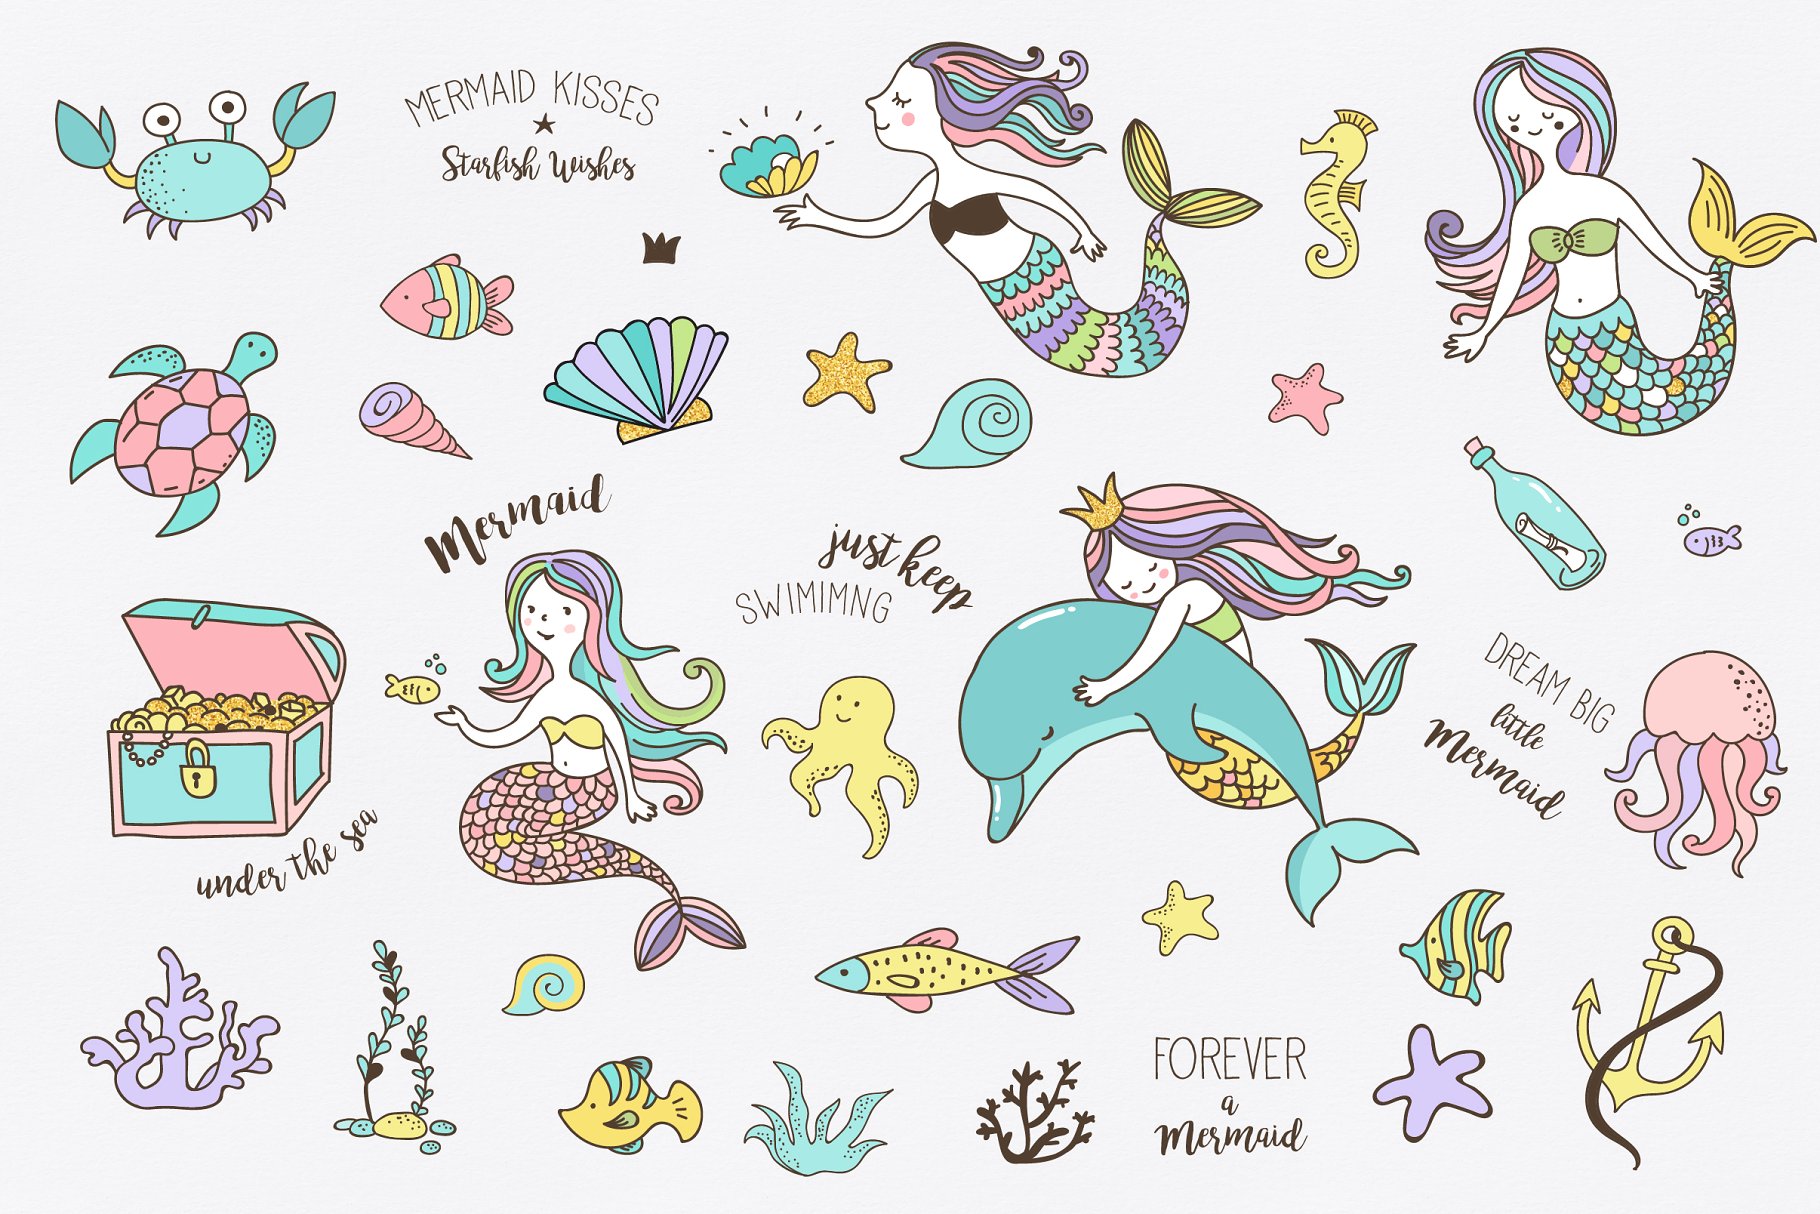 可爱的美人鱼卡通图形素材 Little Mermaid –